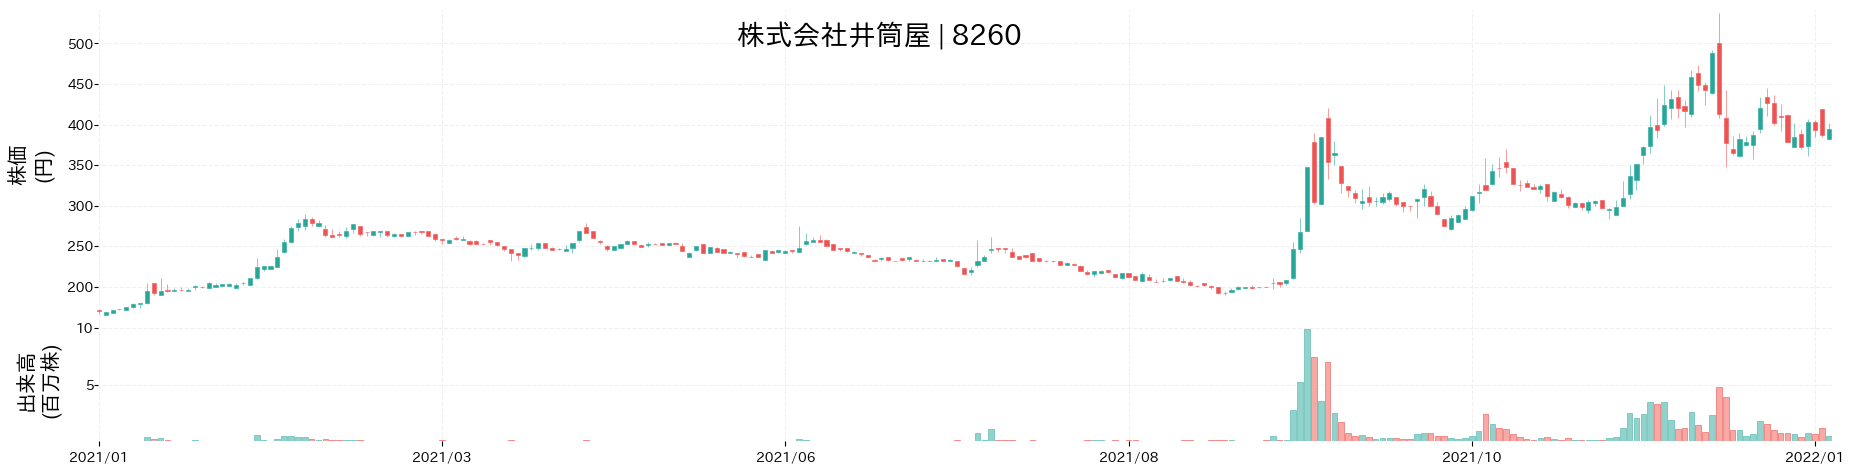 井筒屋の株価推移(2021)